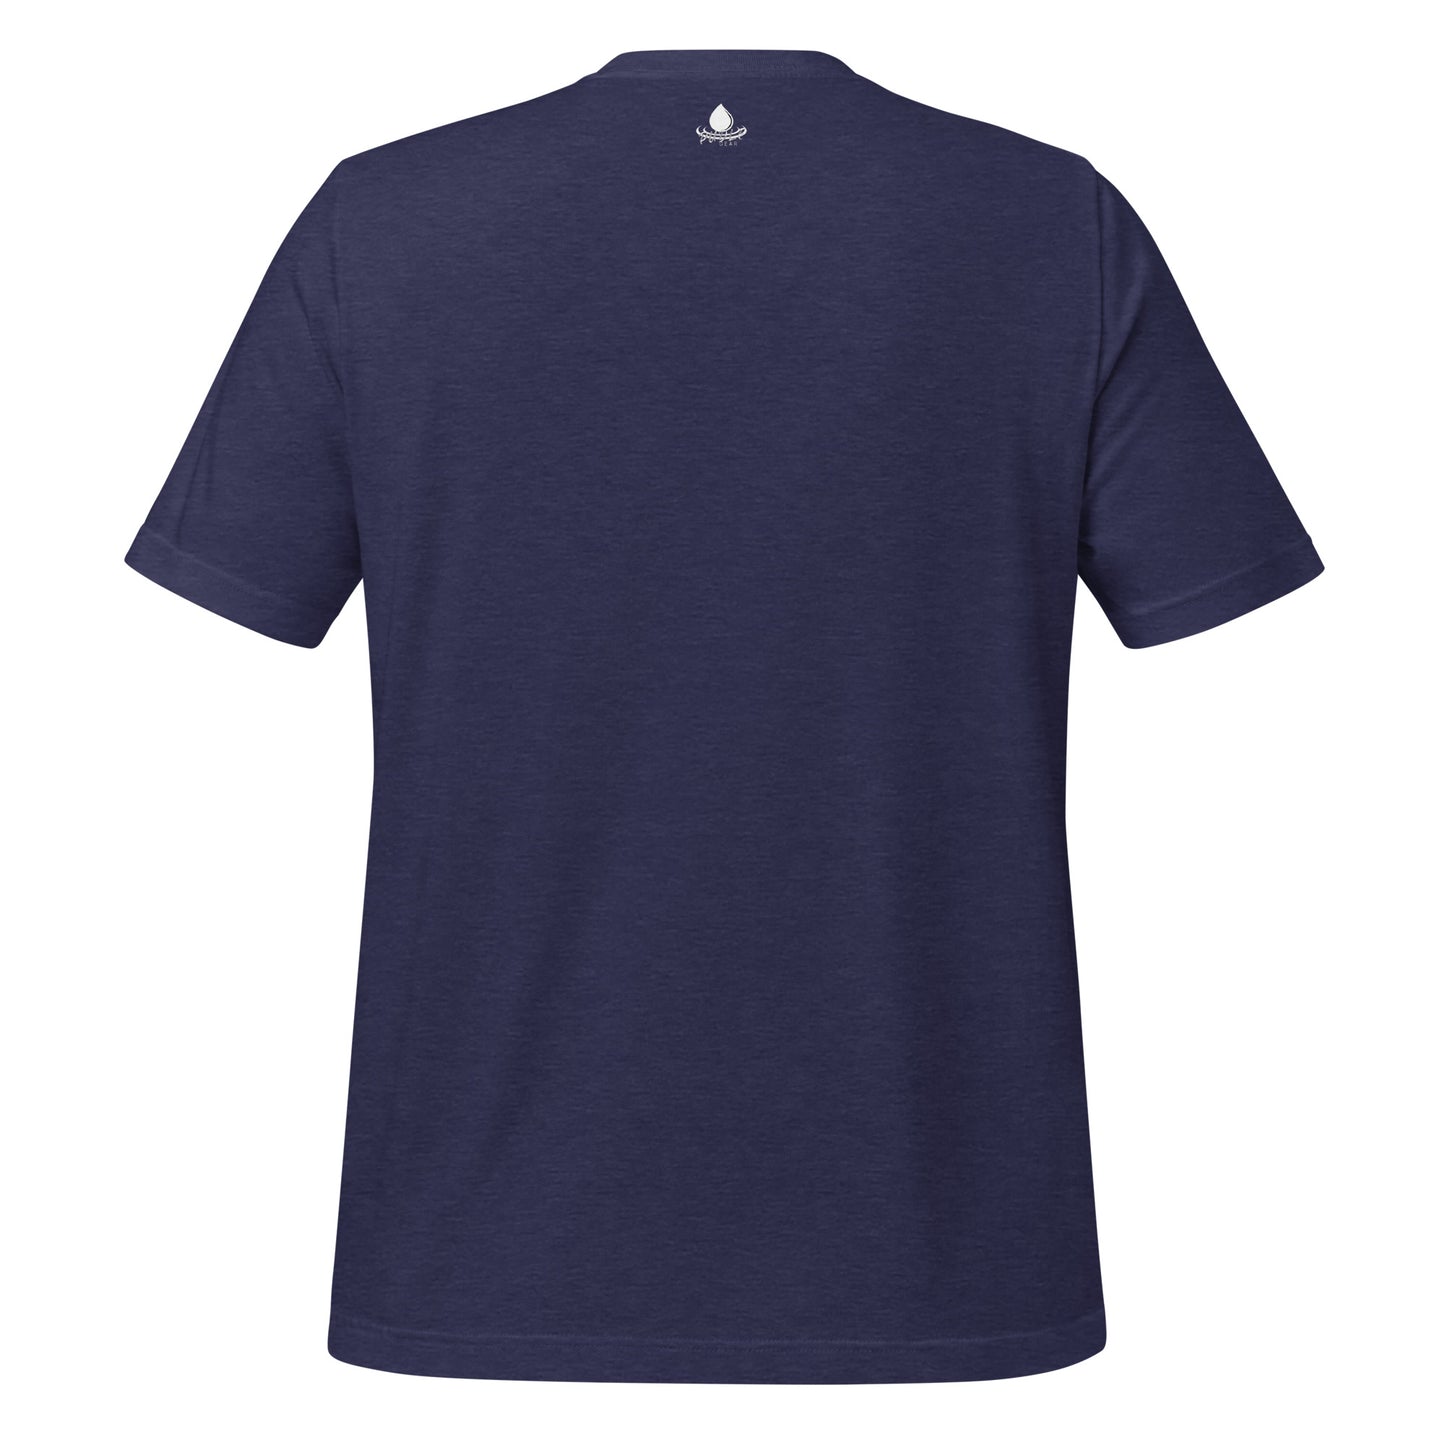 Cool Stormwater Geek - Unisex t-shirt